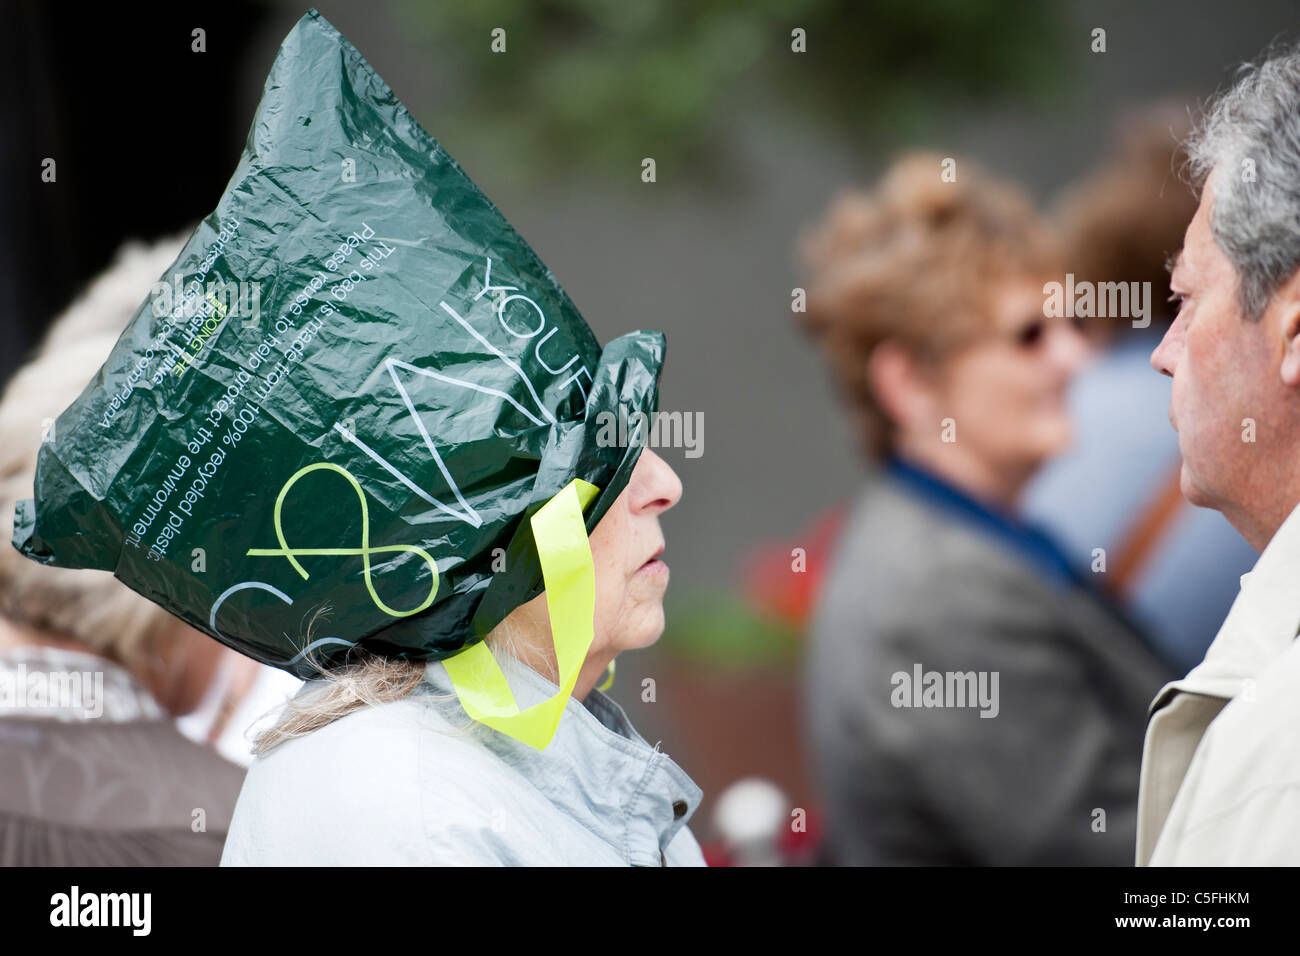 Un actionnaire maintient au chaud en utilisant un sac de plastique comme un chapeau tout en queue devant la salle des fêtes pour l'aga de Marks & Spencer. Banque D'Images